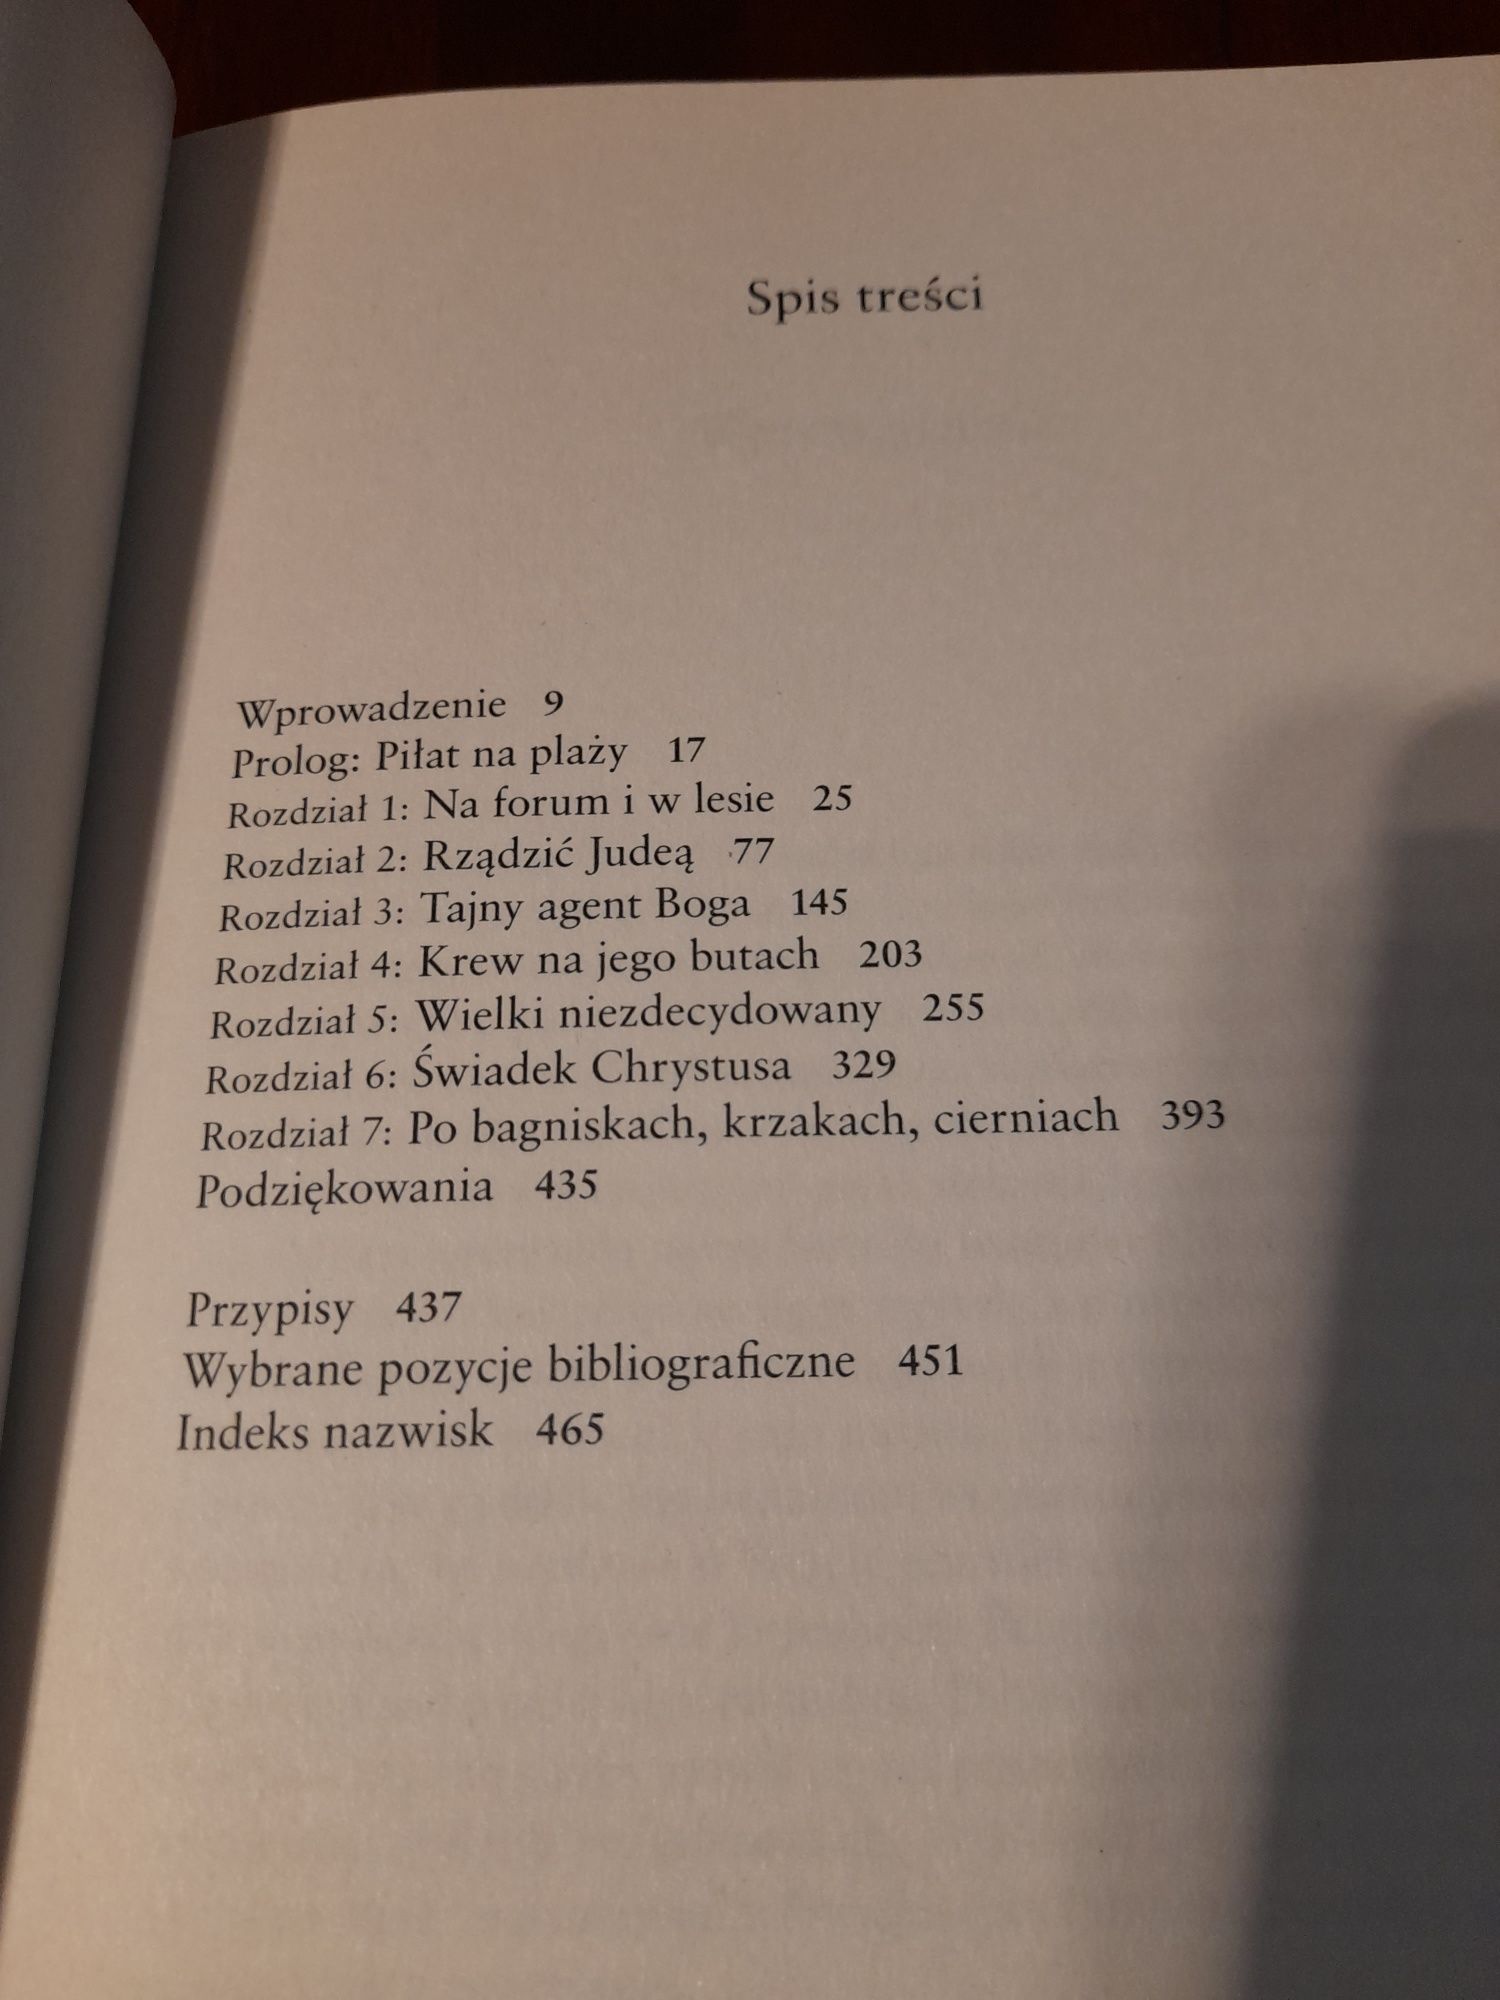 Książka "Poncjusz Piłat", A. Wroe